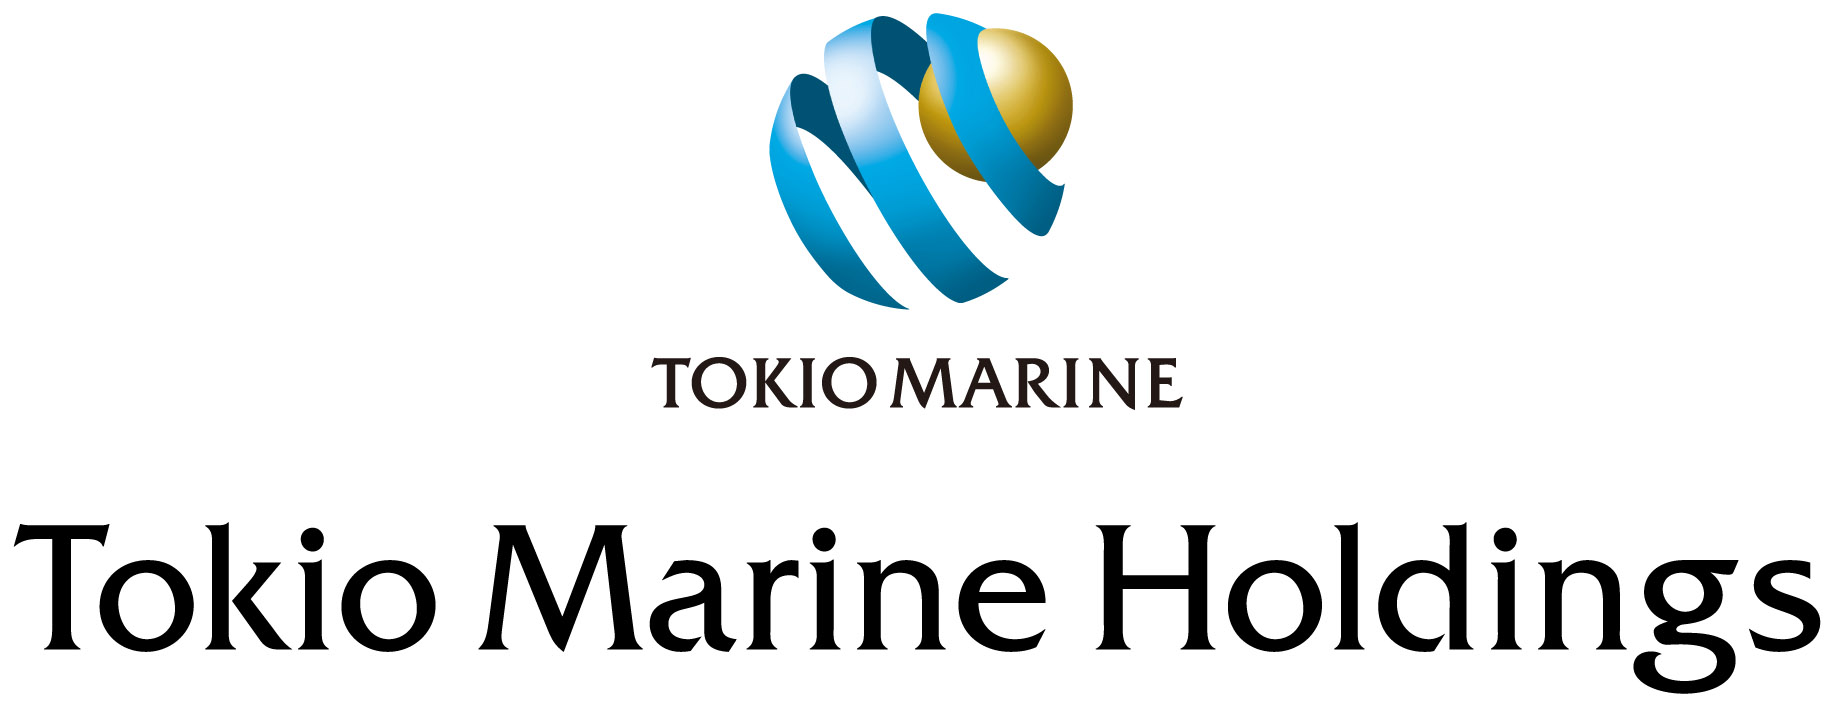 TOKIO MARINE HOLDINGS INC